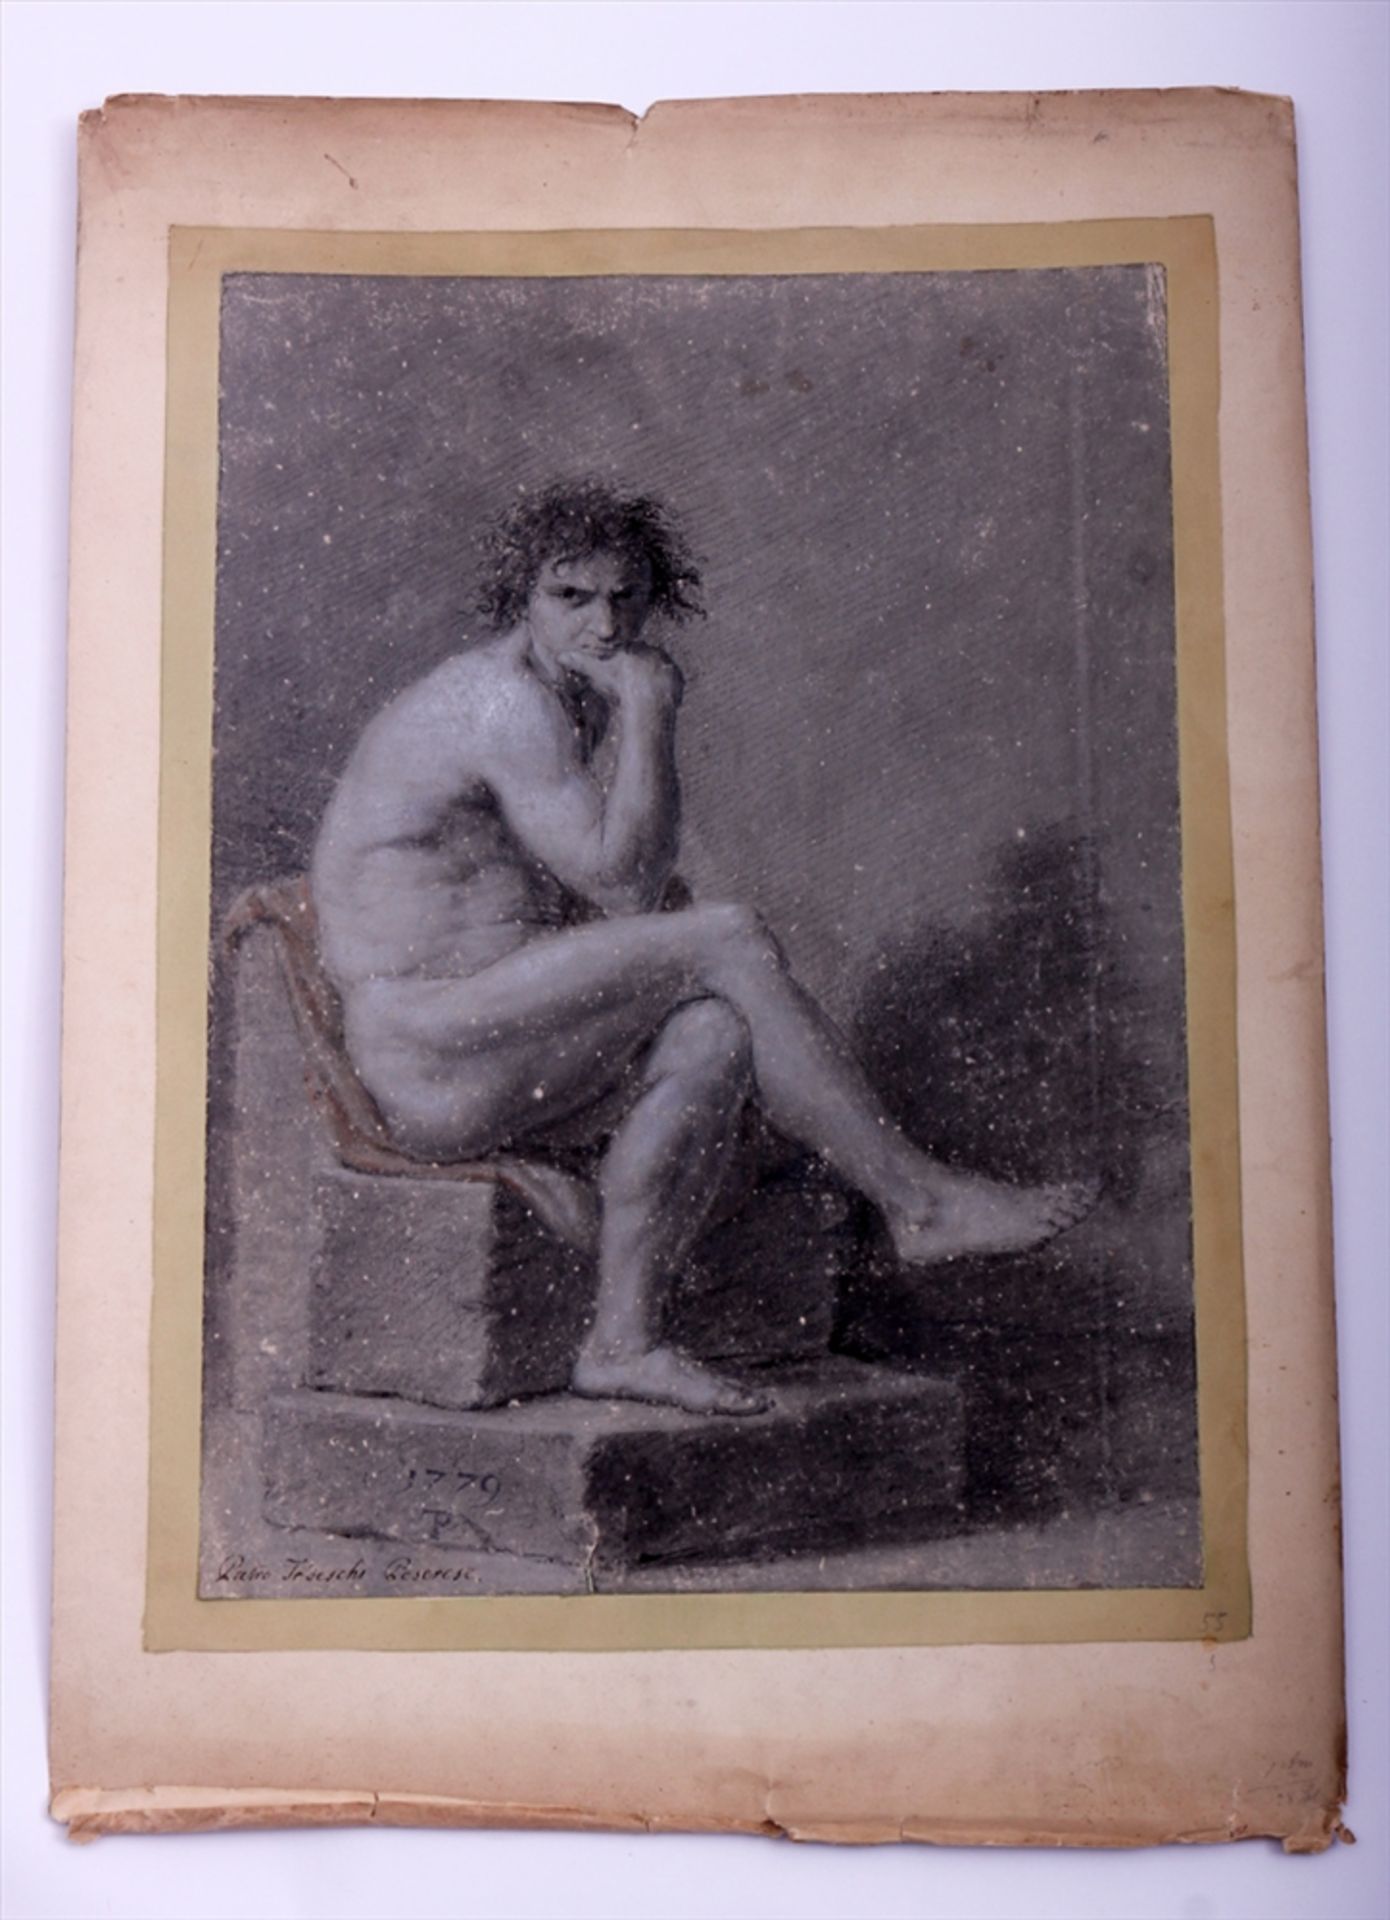 Pietro Tedeschi Peserese, sitzender männlicher Akt in Denkerpose, dat. "1779", Kreidezeichnung auf